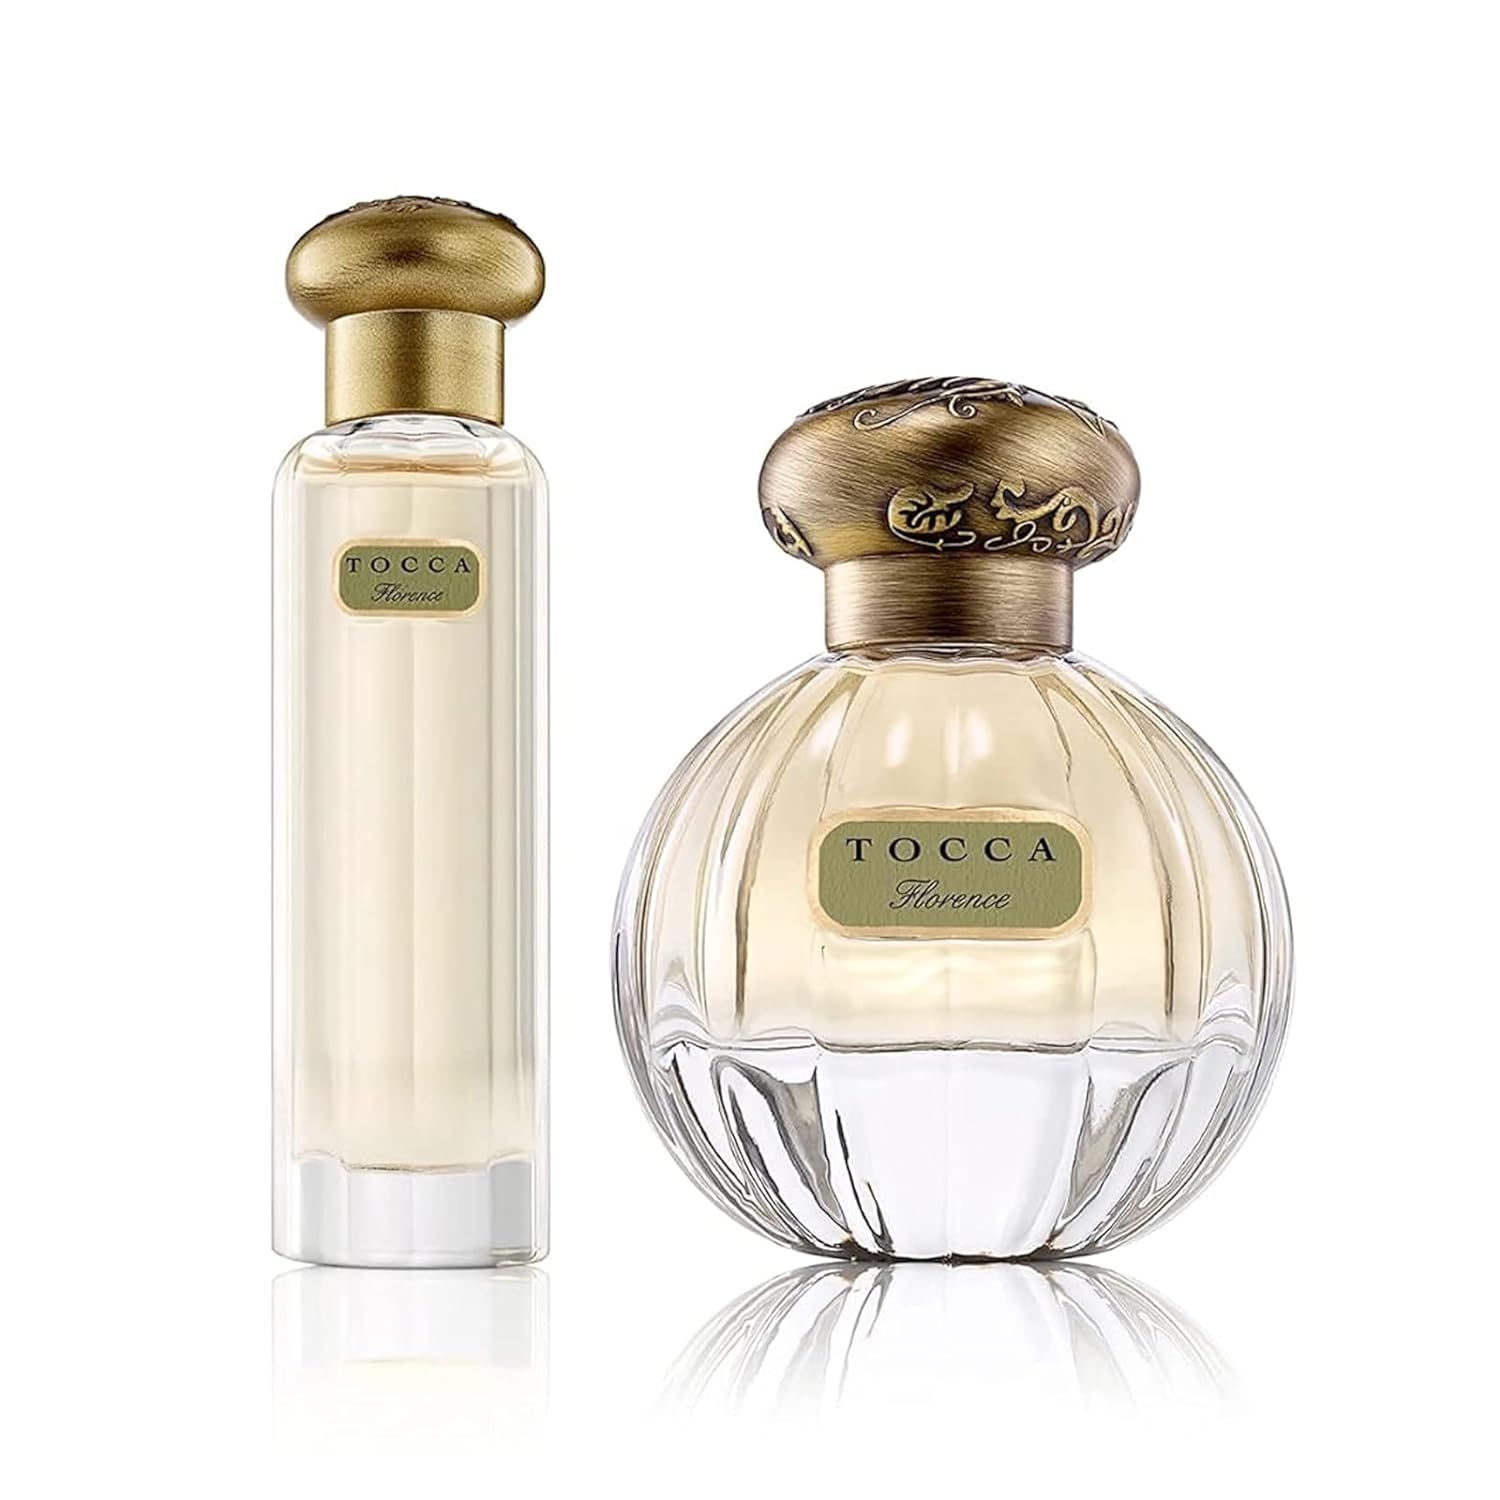 Tocca Eau de Parfum Set for Women, Florence (20ml + 50ml) - Classic Floral, Bergamot, Pear, Garde... | Amazon (US)